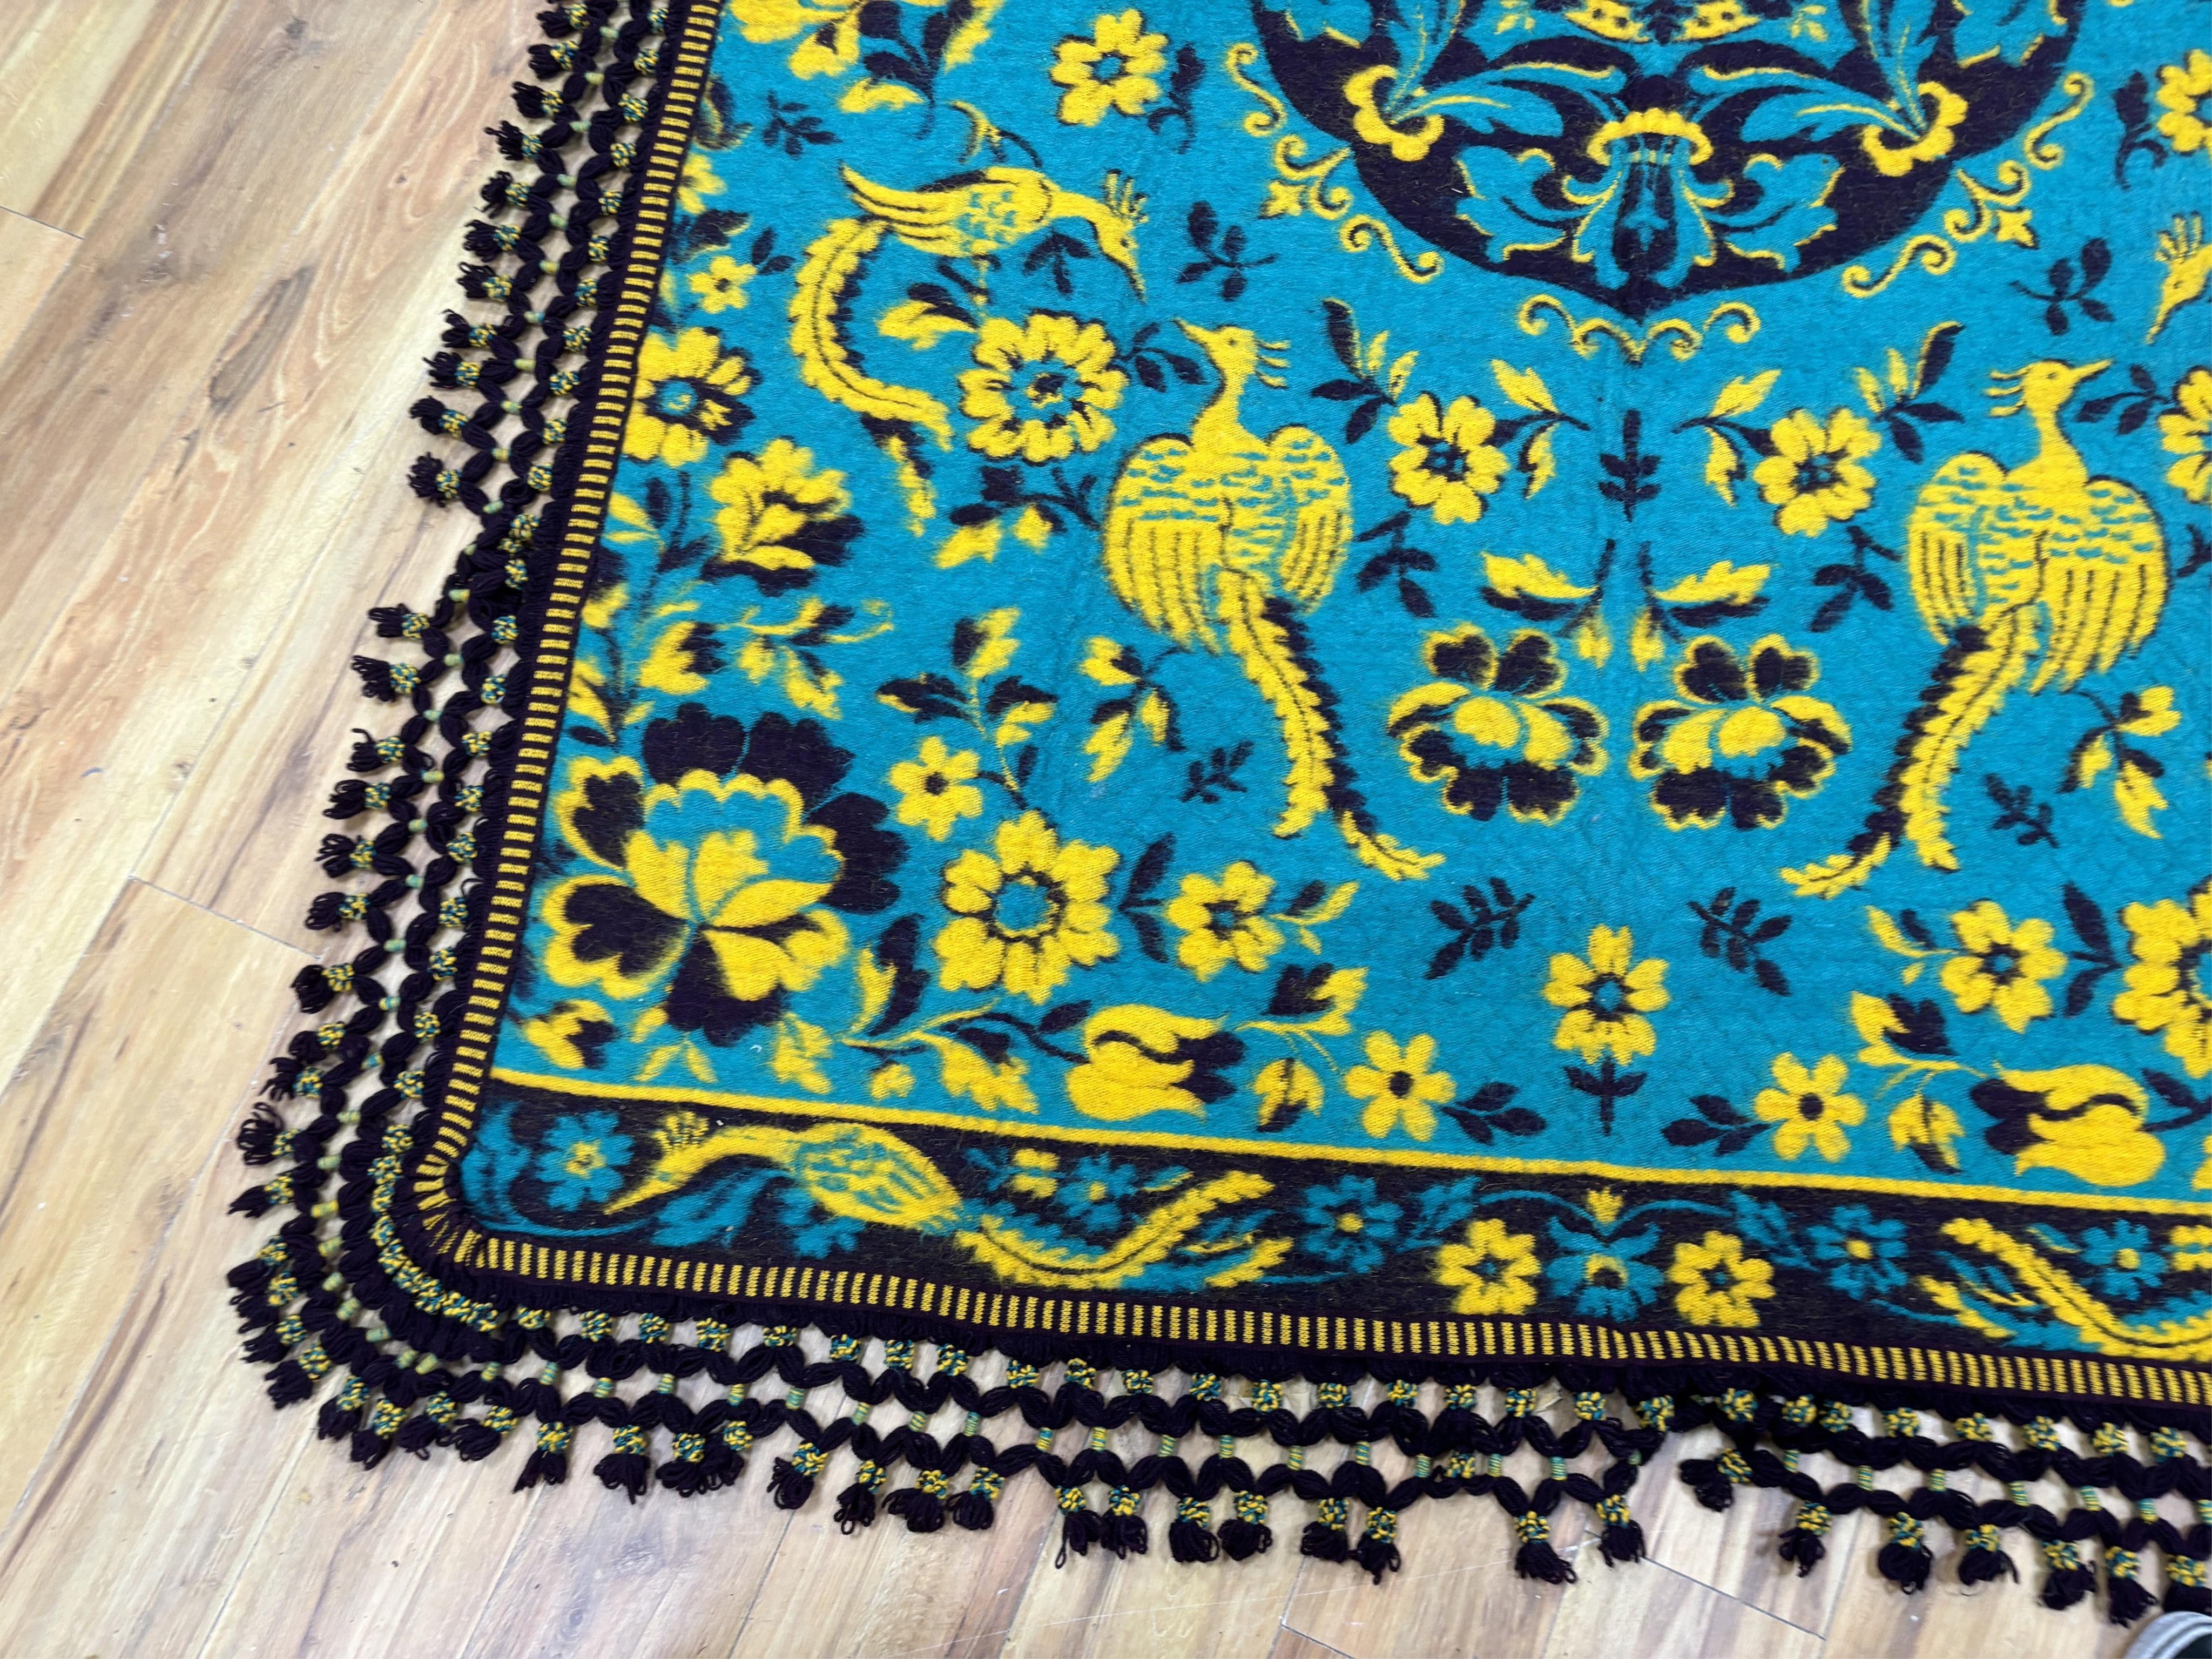 A large Zamorana pure wool blanket, 170 x 236cm